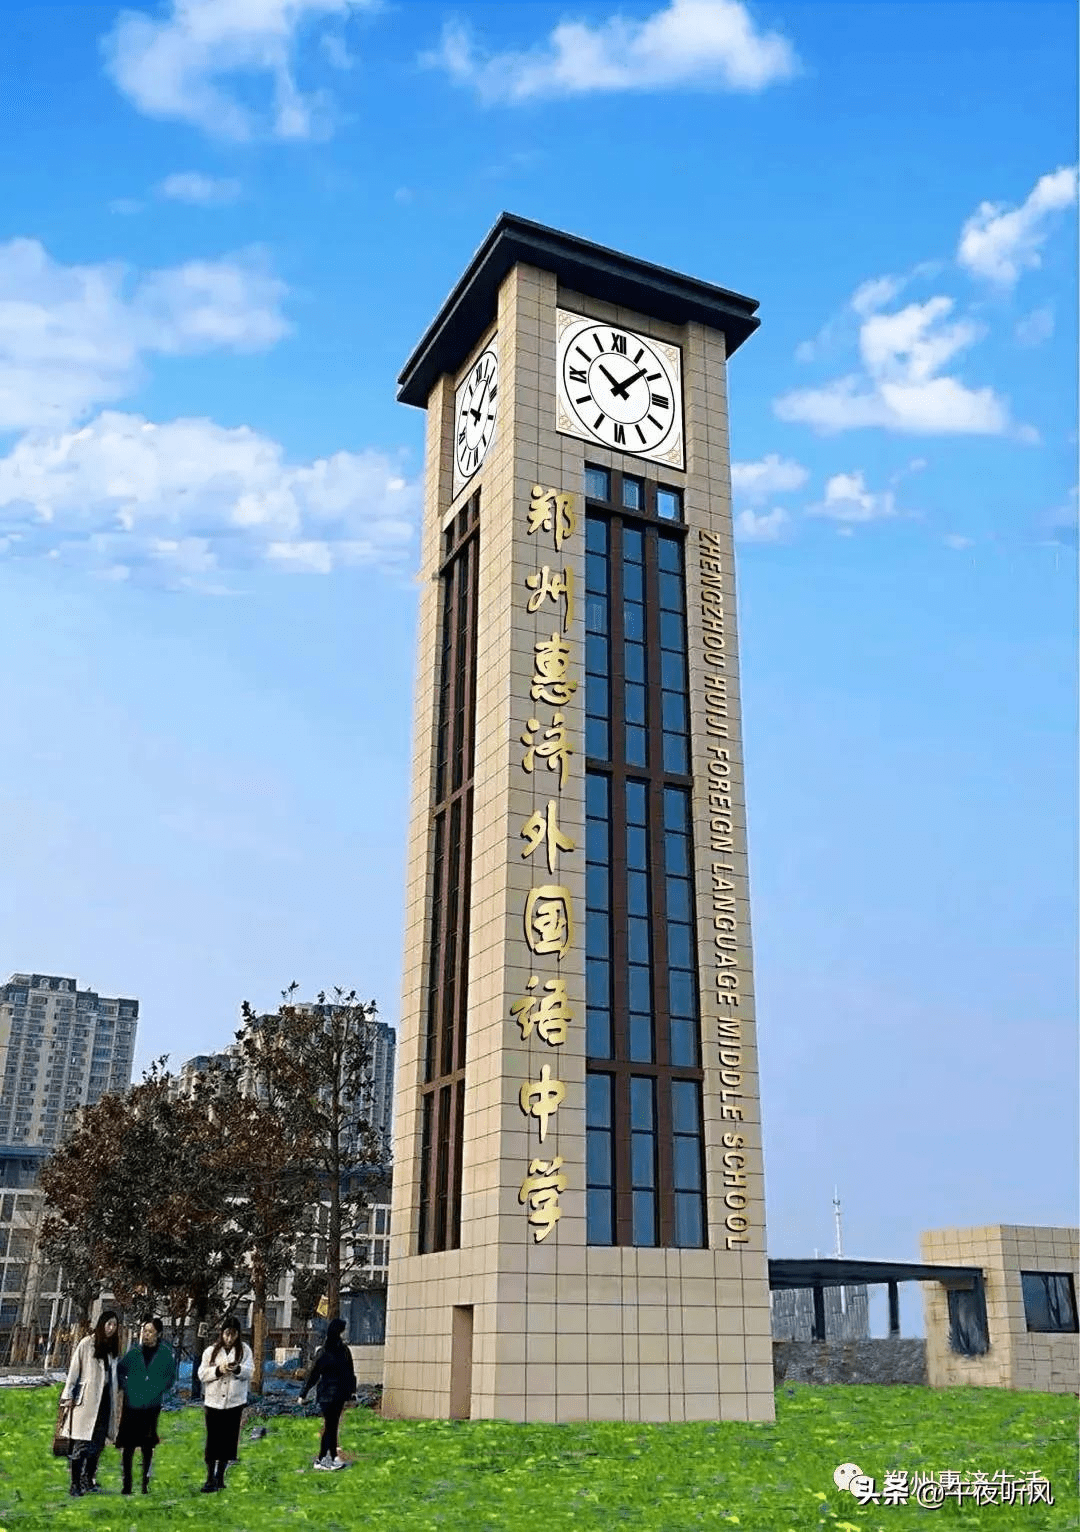 好消息!郑州惠济区新增一所外国语中学,2021年秋季开始招生